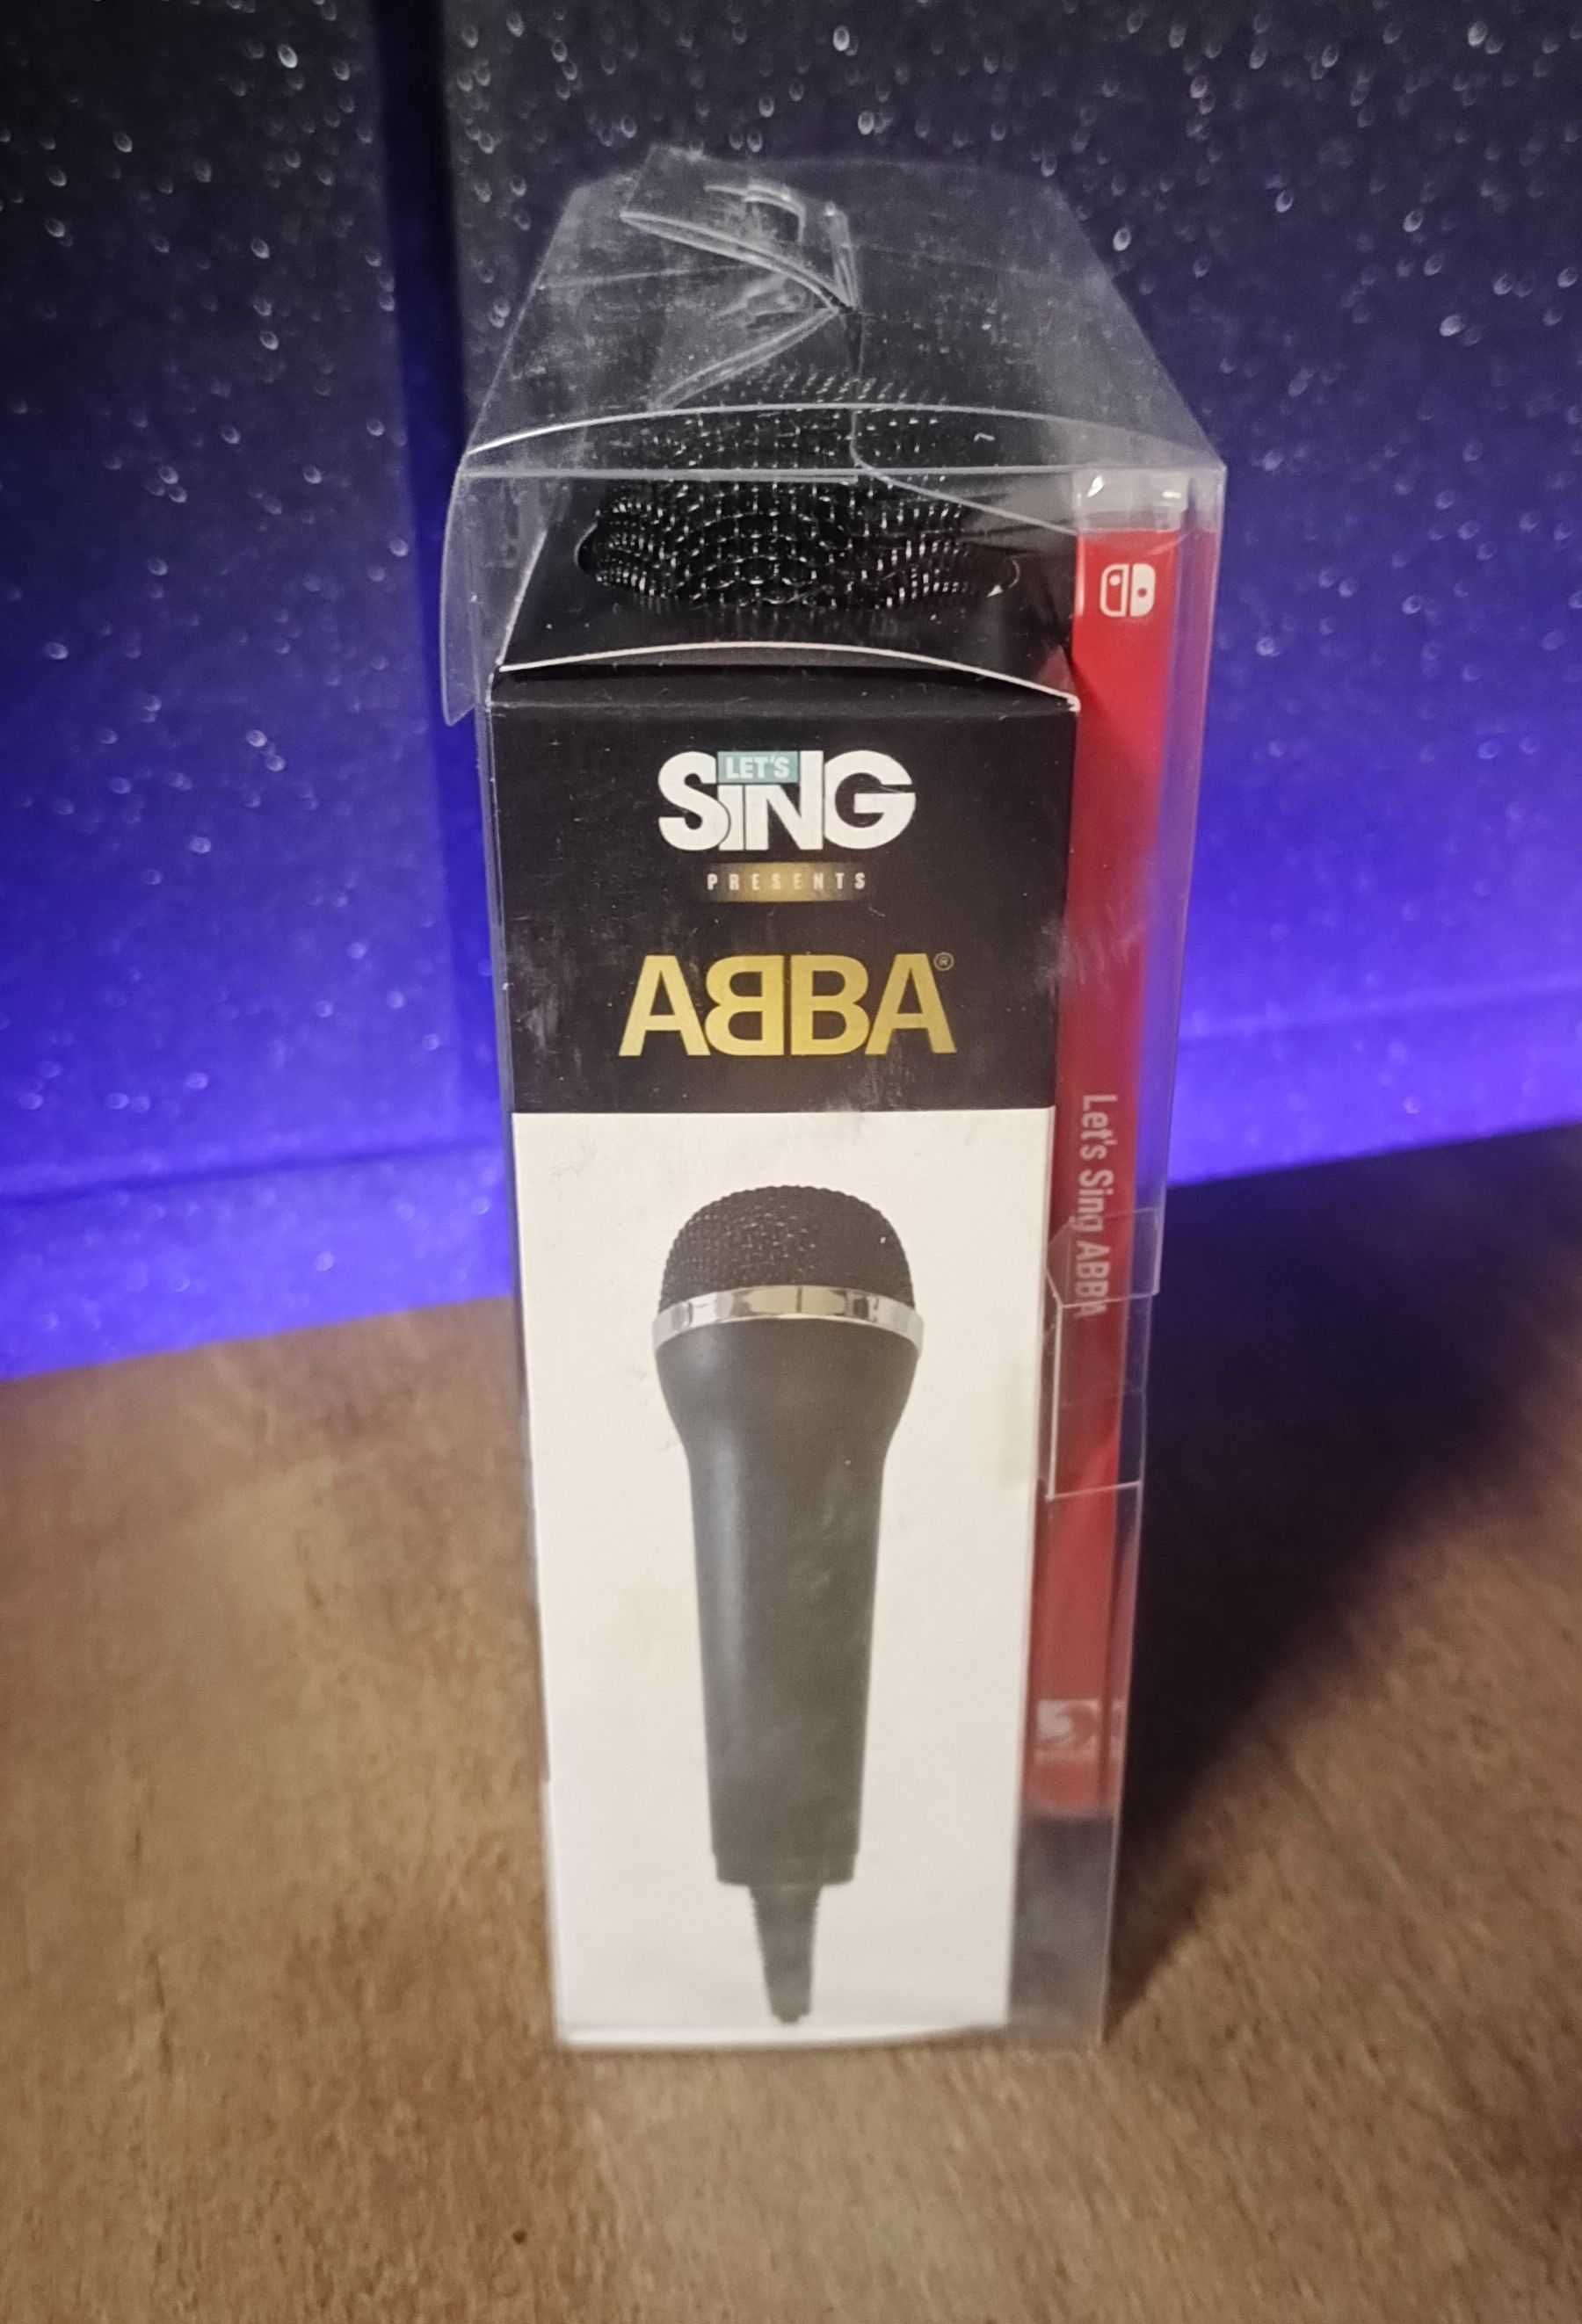 Let's Sing ABBA Nintendo Switch PL - hity ABBA, karaoke dwa mikrofony!